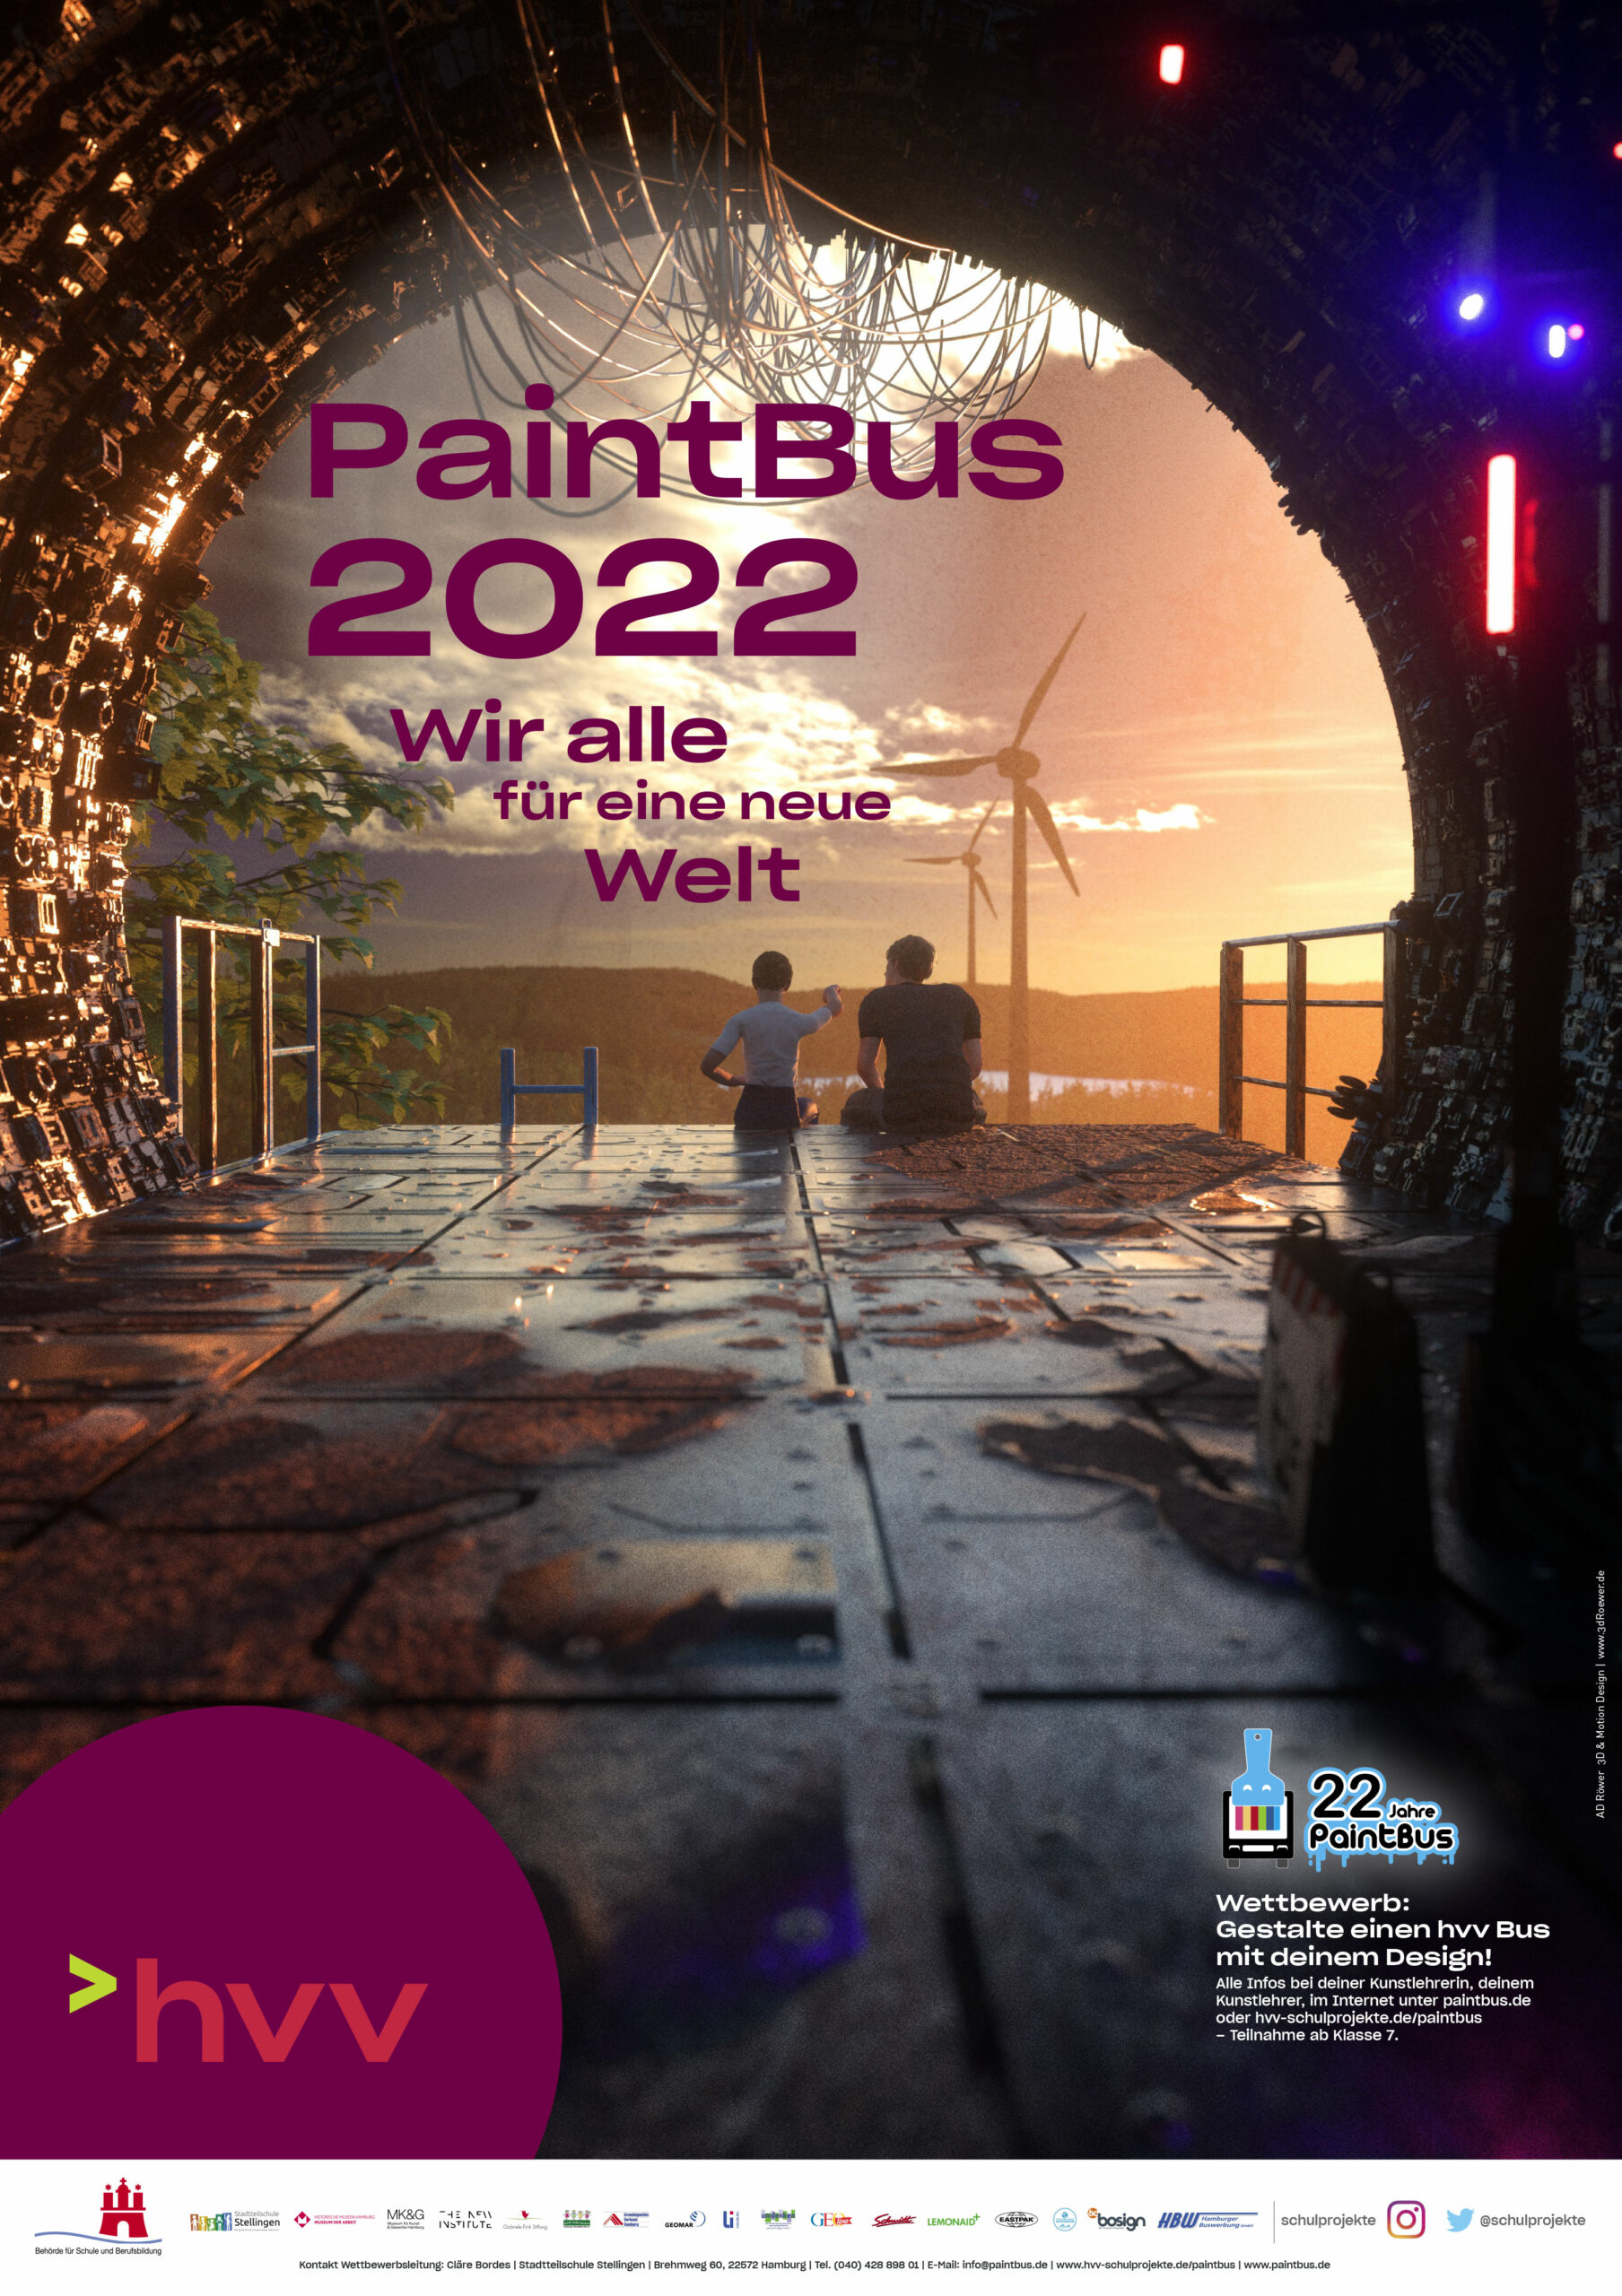 Paintbus 2022